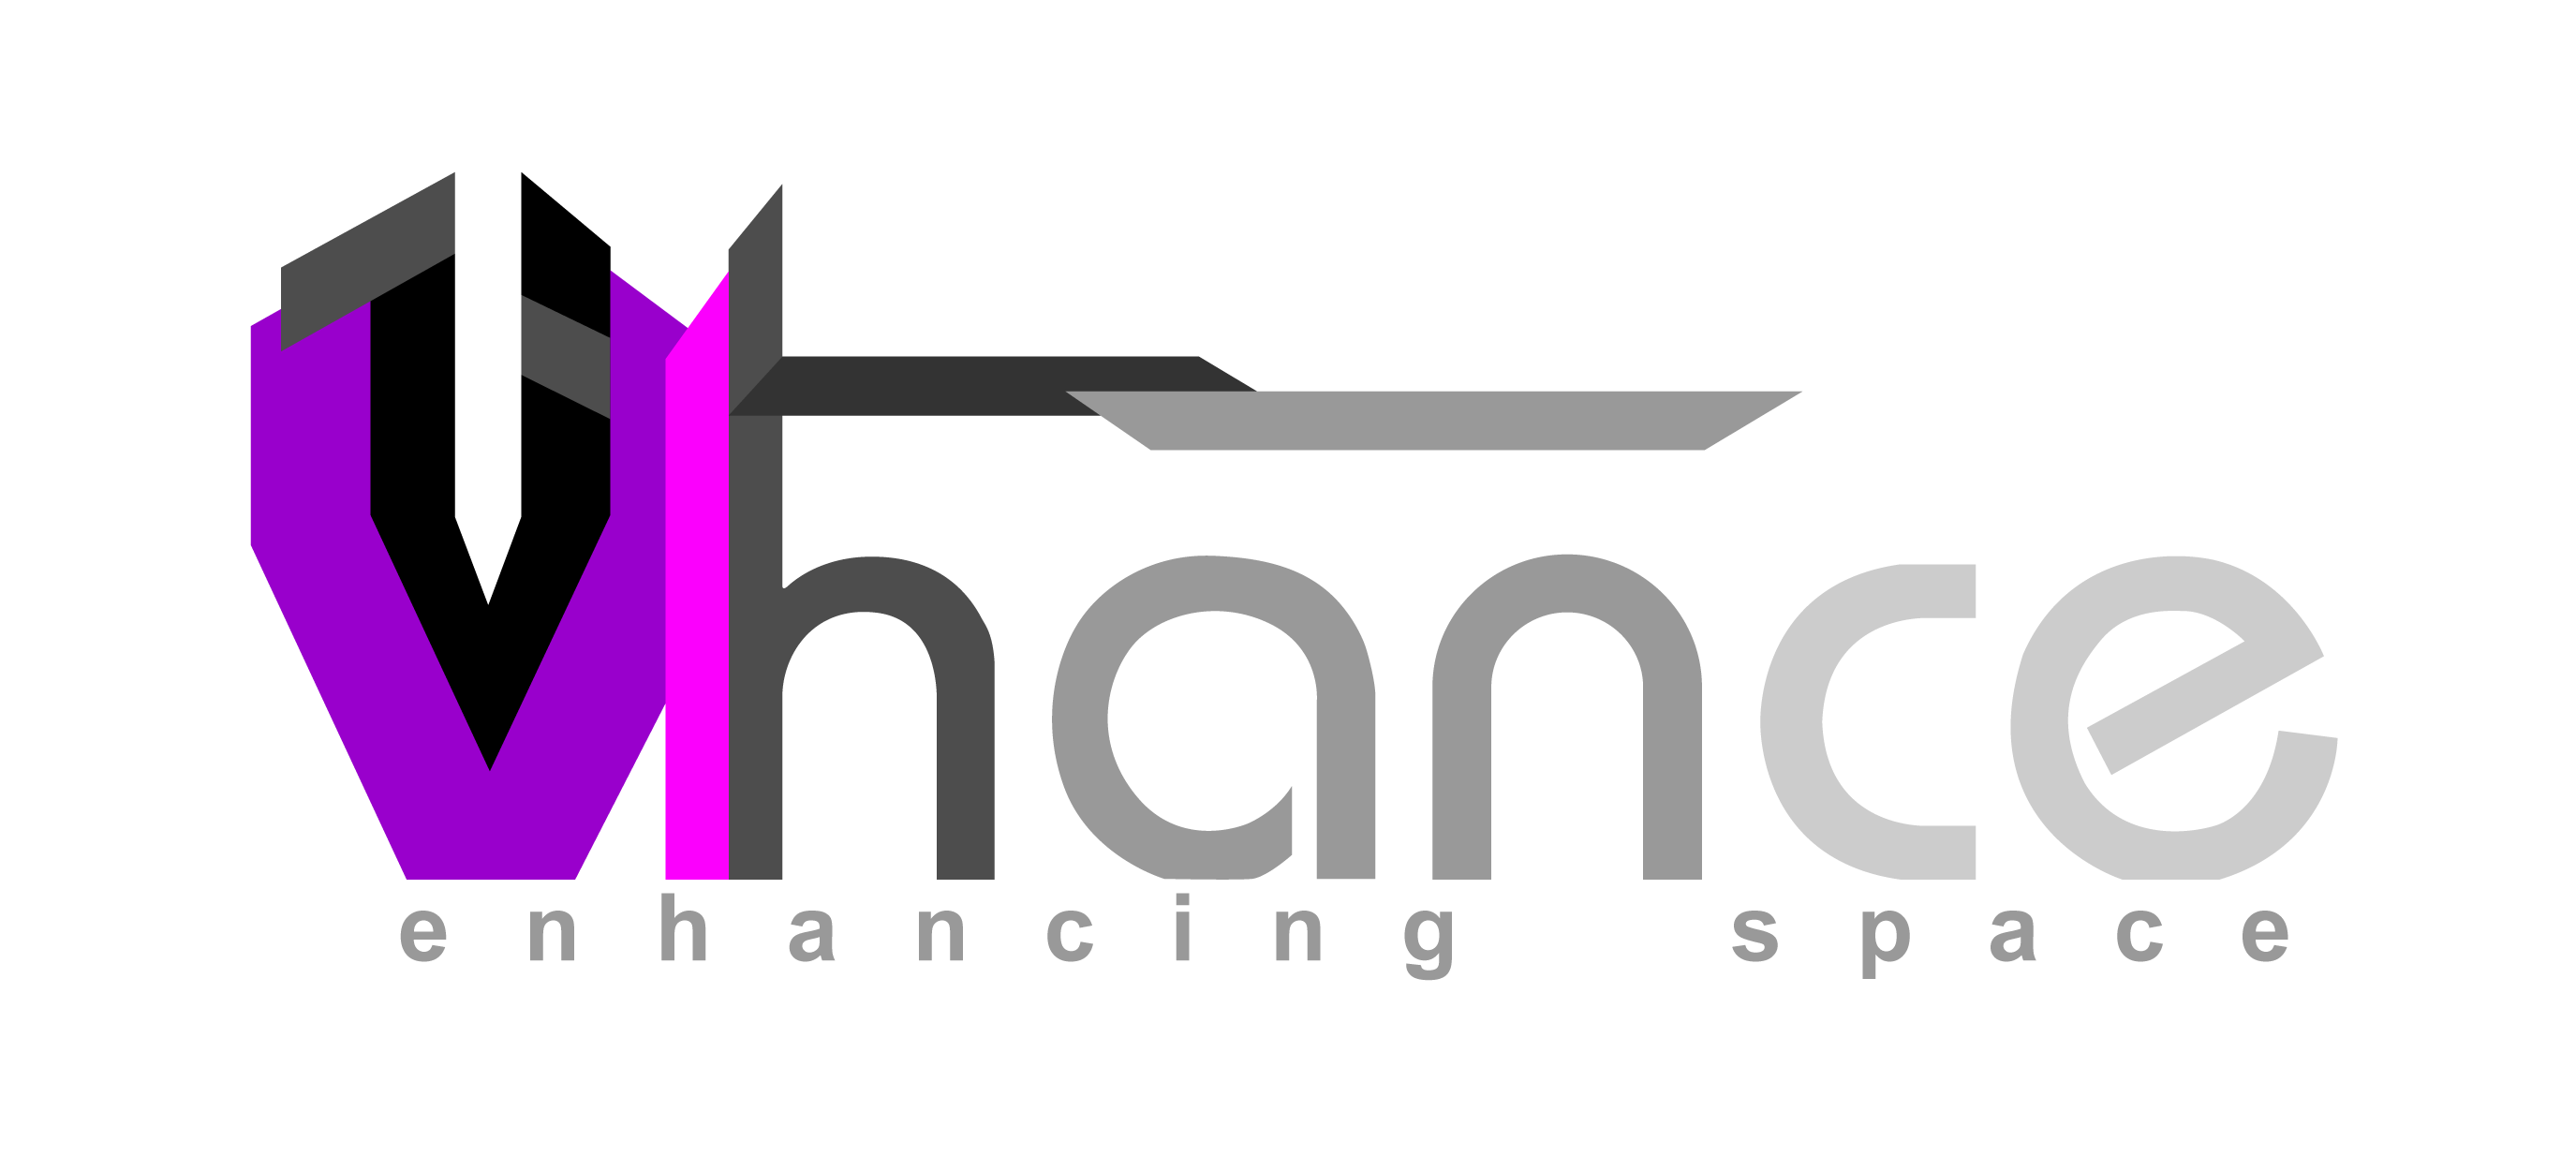 Vhance logo